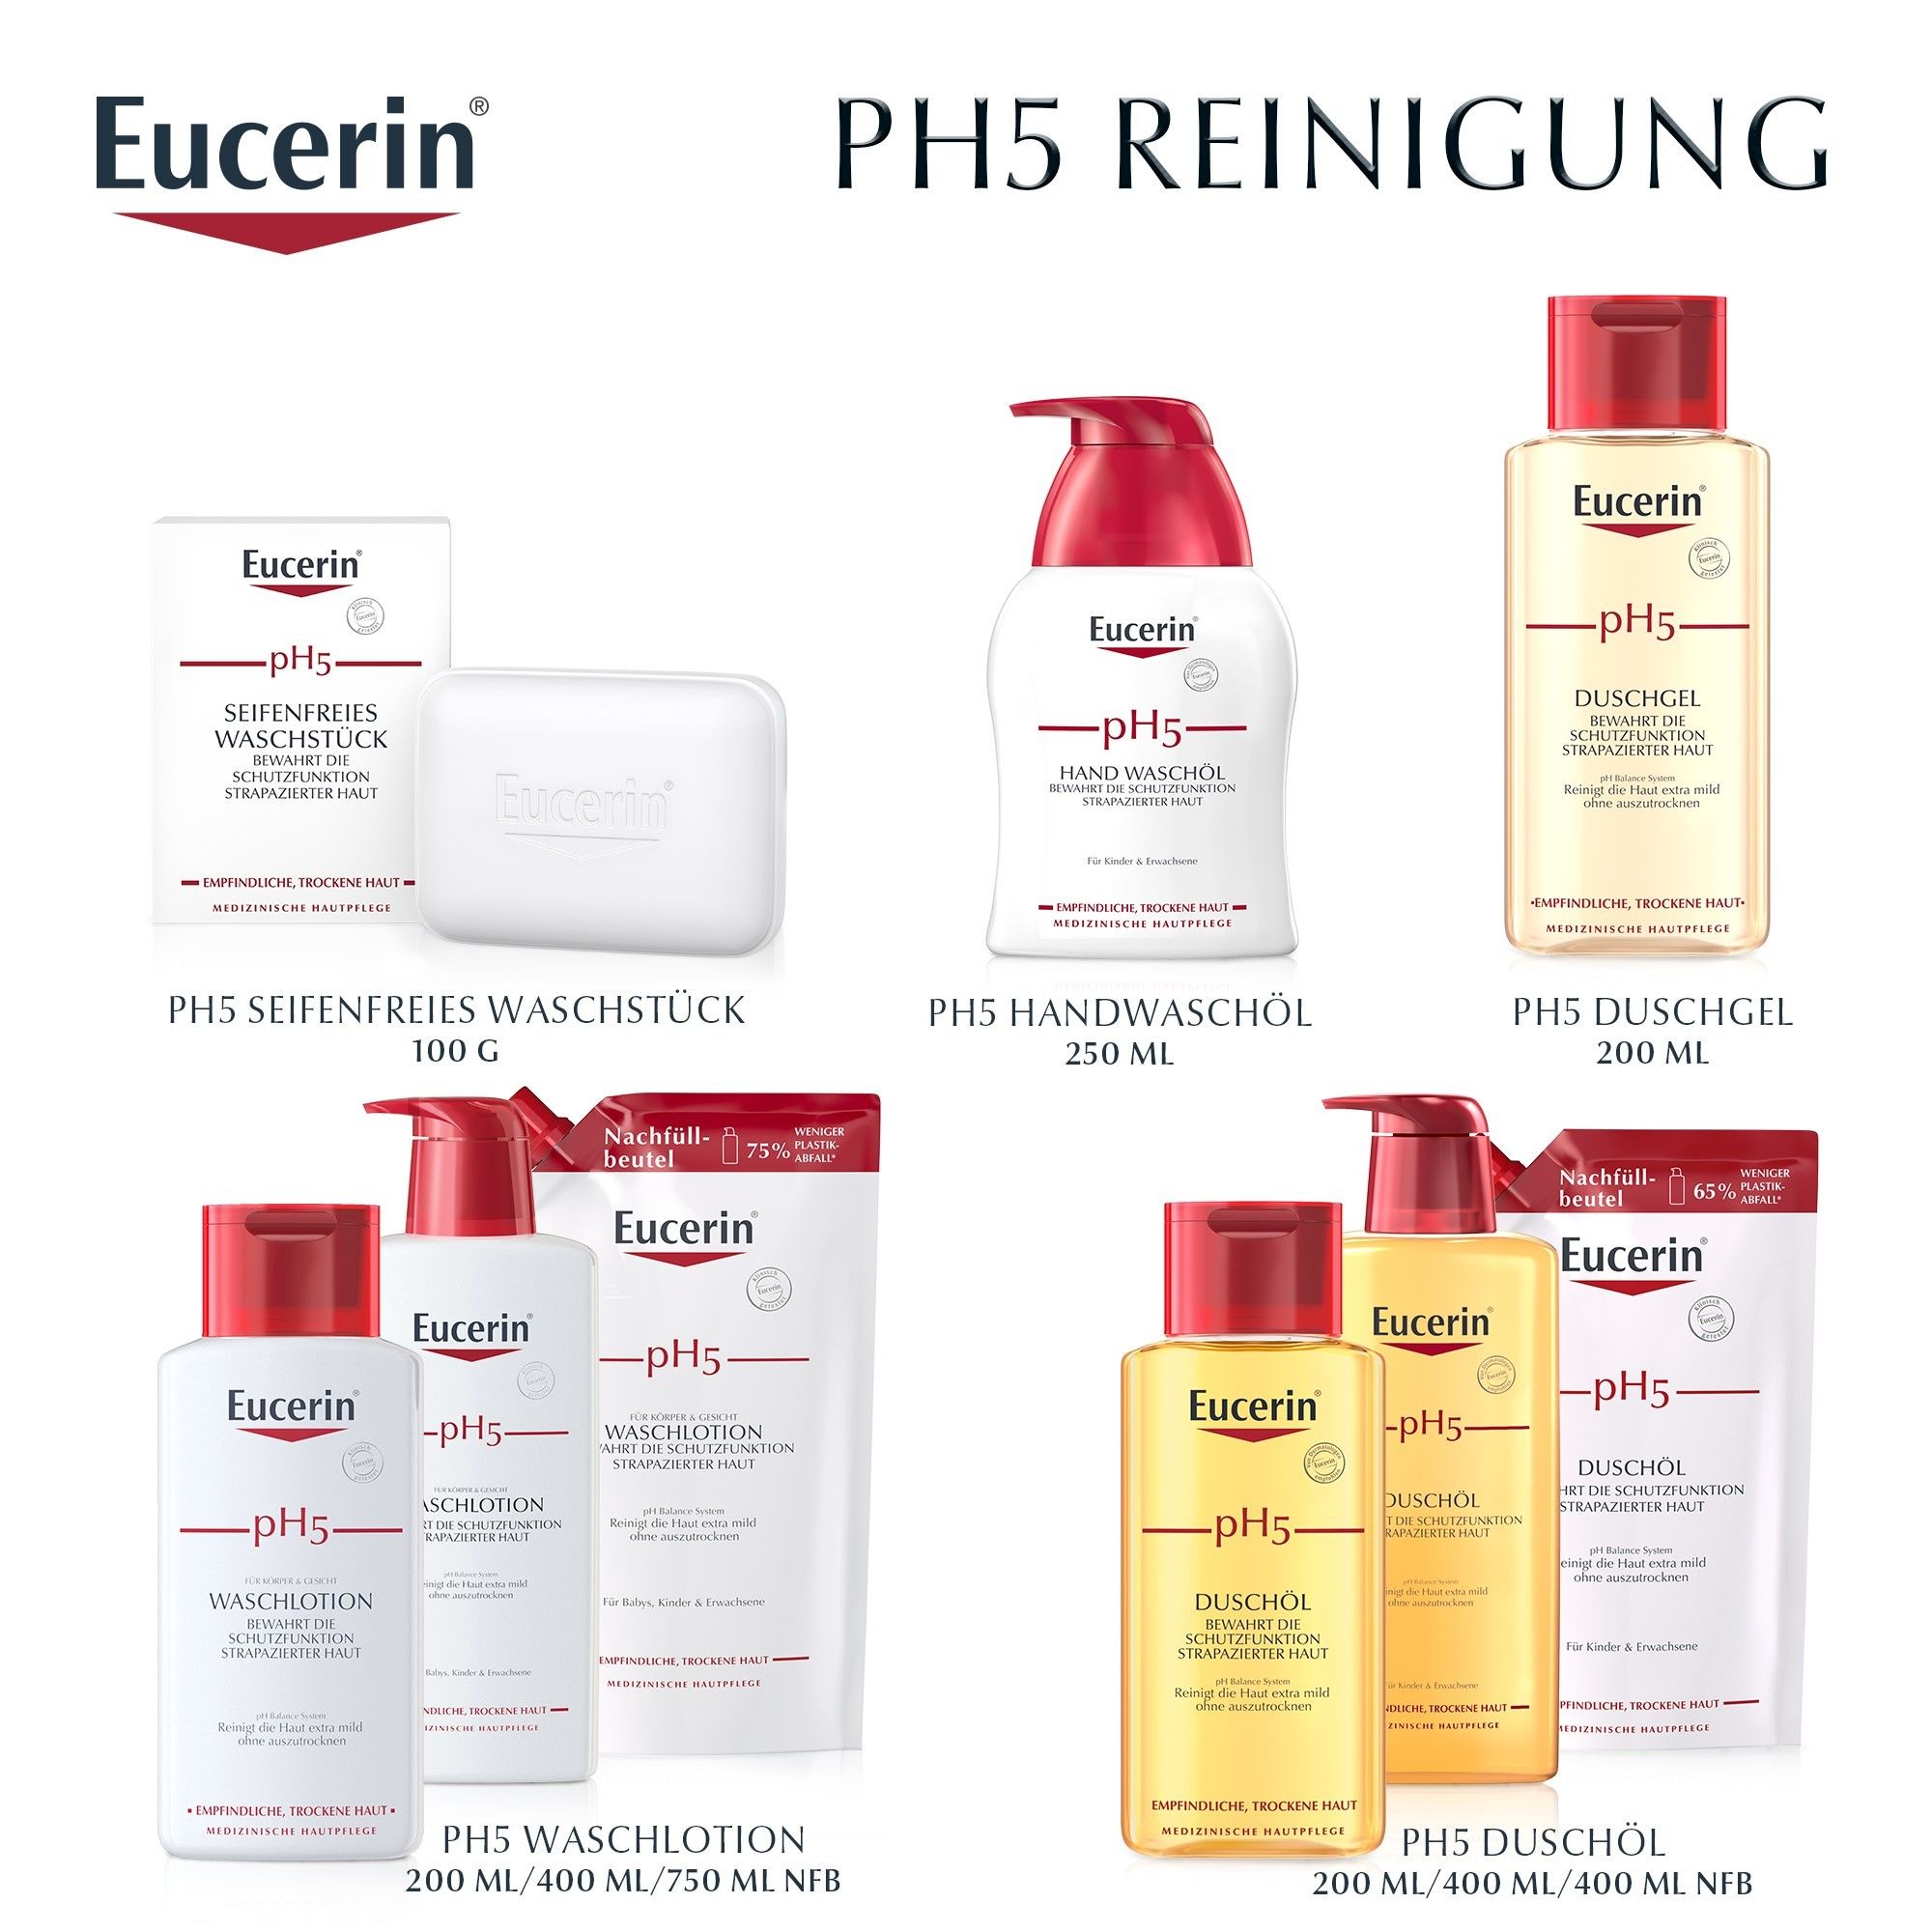 Eucerin® pH5 Pflegesalbe – Pflegt rissige und beanspruchte Haut & schützt vor Hautbelastungen- Jetzt 20 % sparen* mit eucerin20